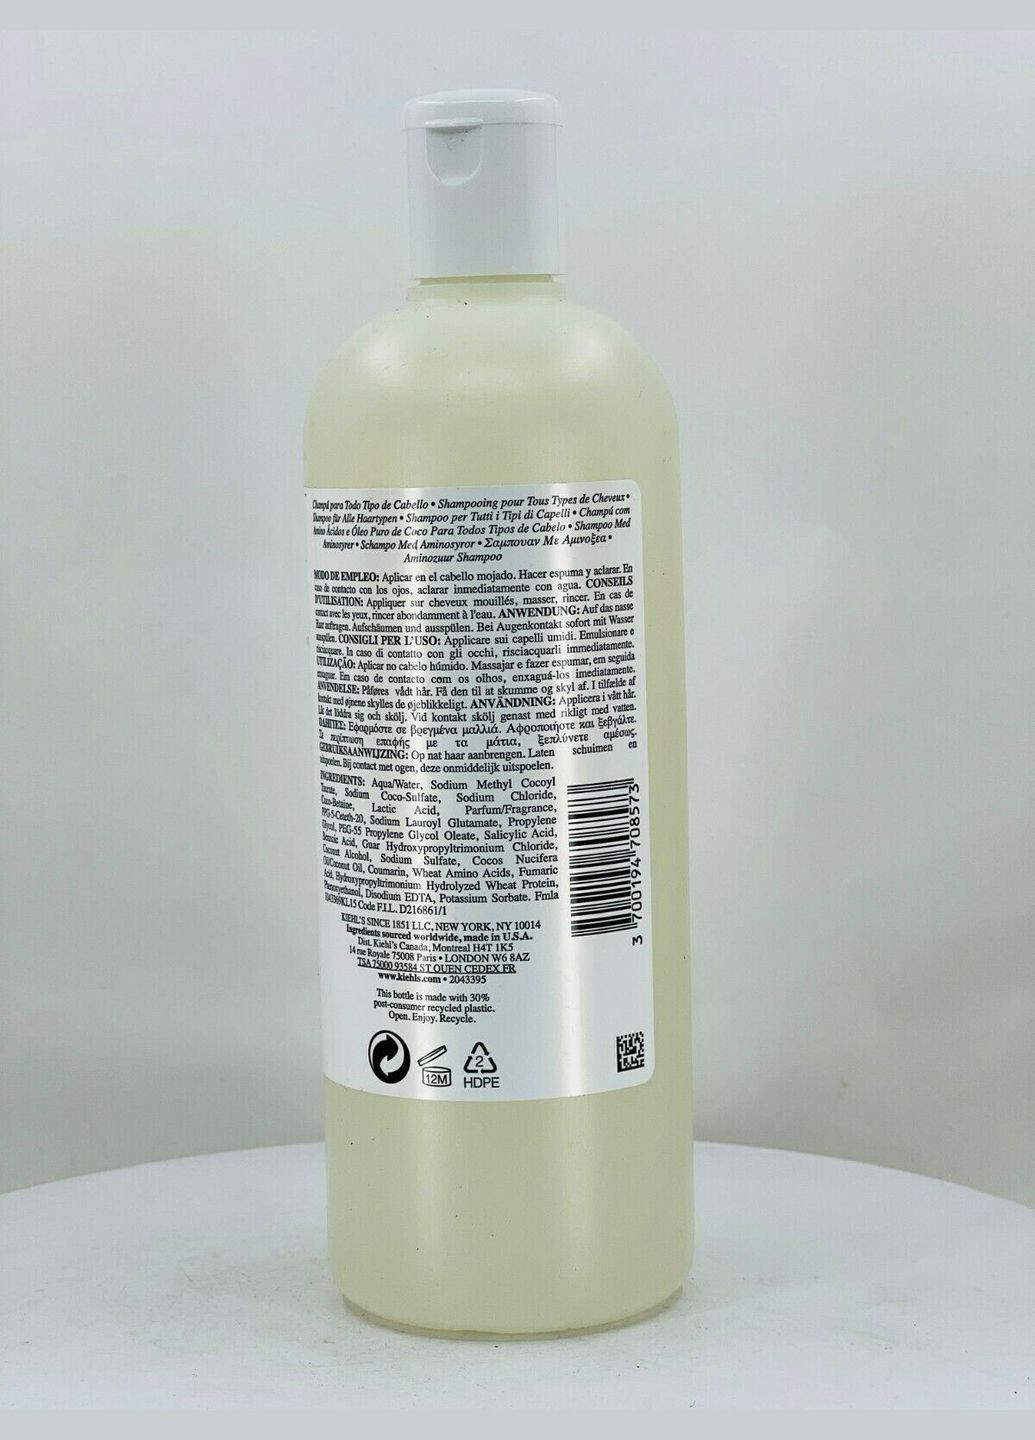 Шампунь для всіх типів волосся з амінокислотами Amino Acid Shampoo 500 мл Kiehl's (280265797)